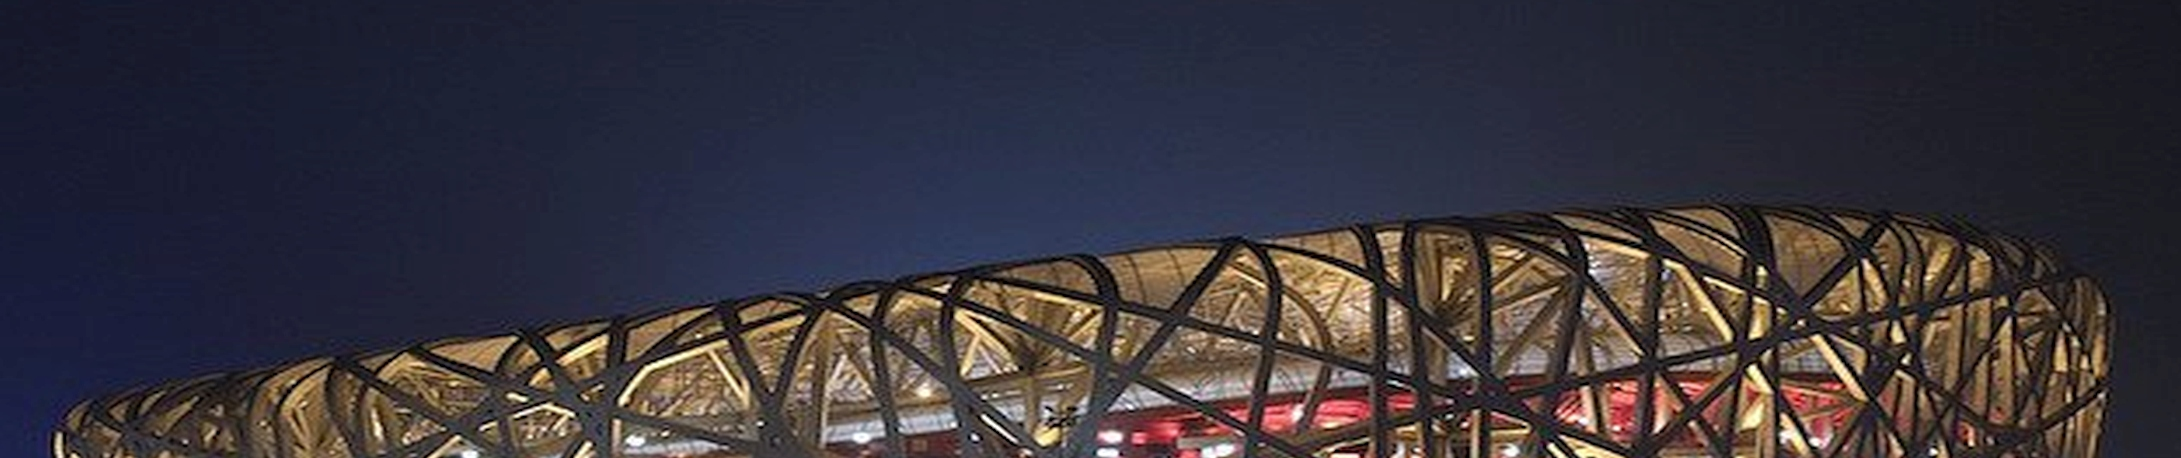 5.1. Konstrukcje łukowe w obiektach kubaturowych Za największą obecnie konstrukcję stalową uważany jest Stadion Narodowy Ptasie Gniazdo w Pekinie,